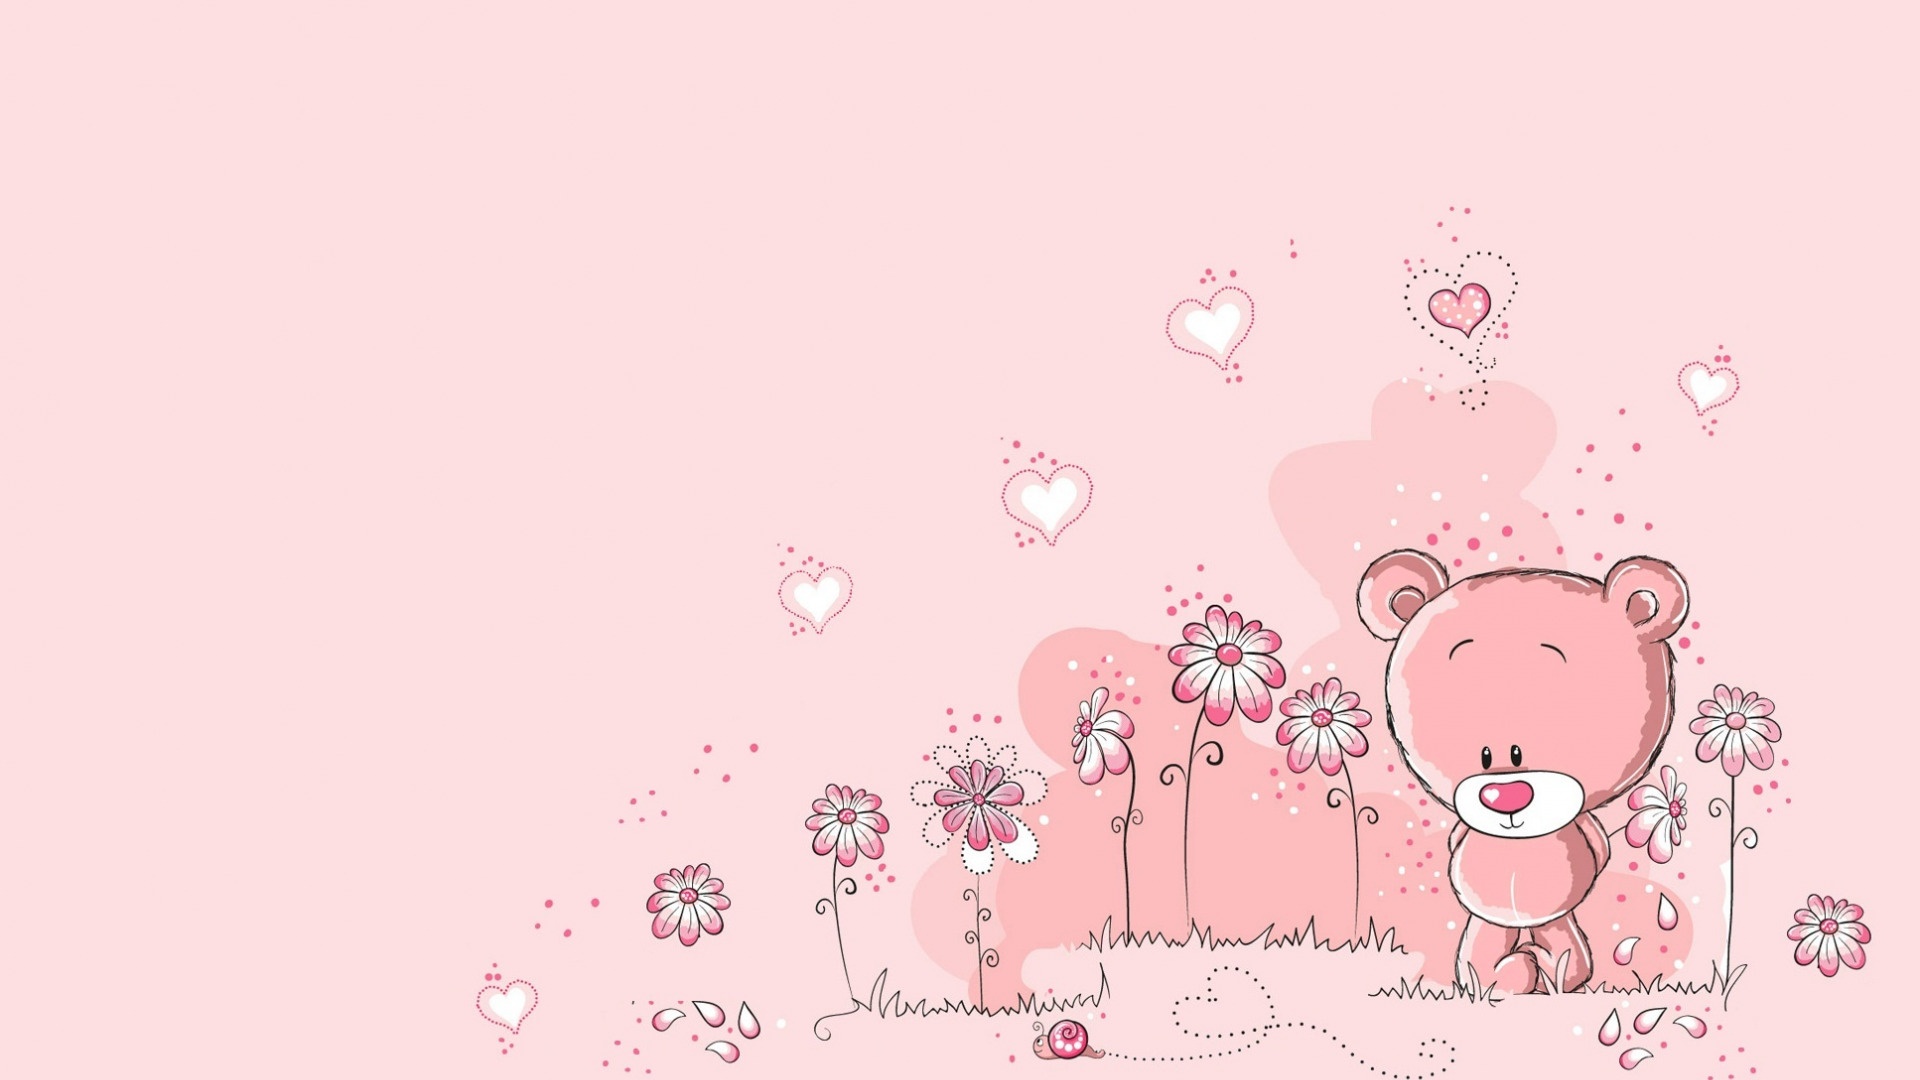 Pink Girly desktop wallpaper free download